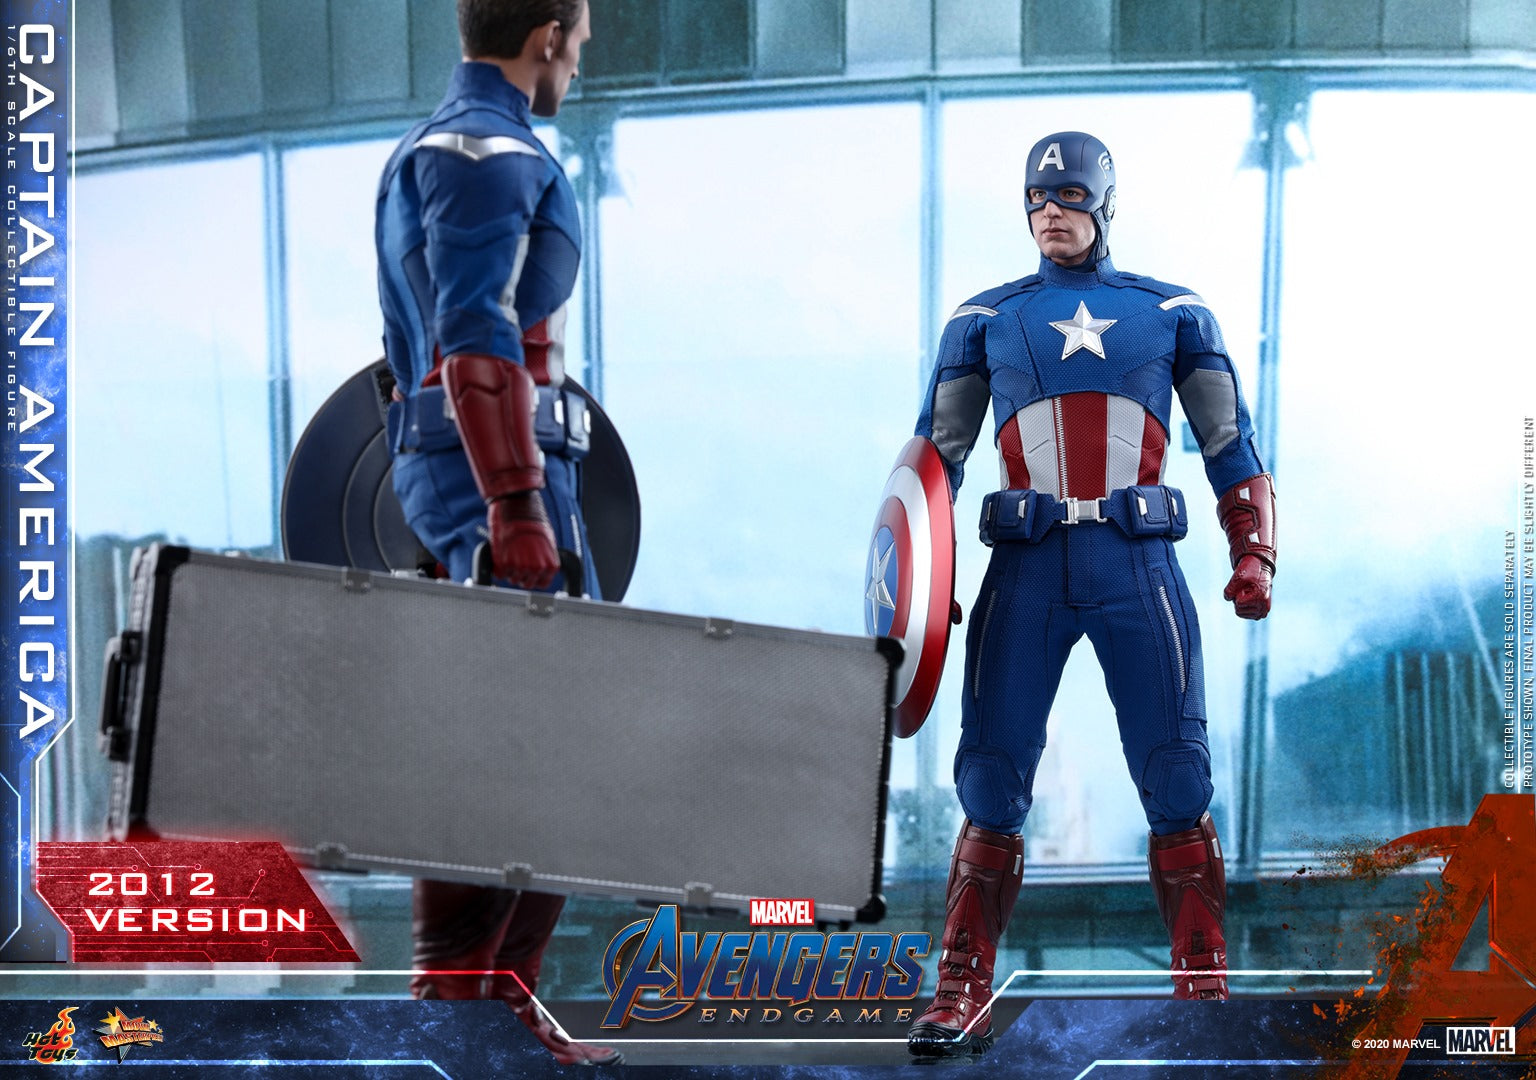 Hot Toys - MMS563 - Avengers: Endgame - Captain America (2012 Version)